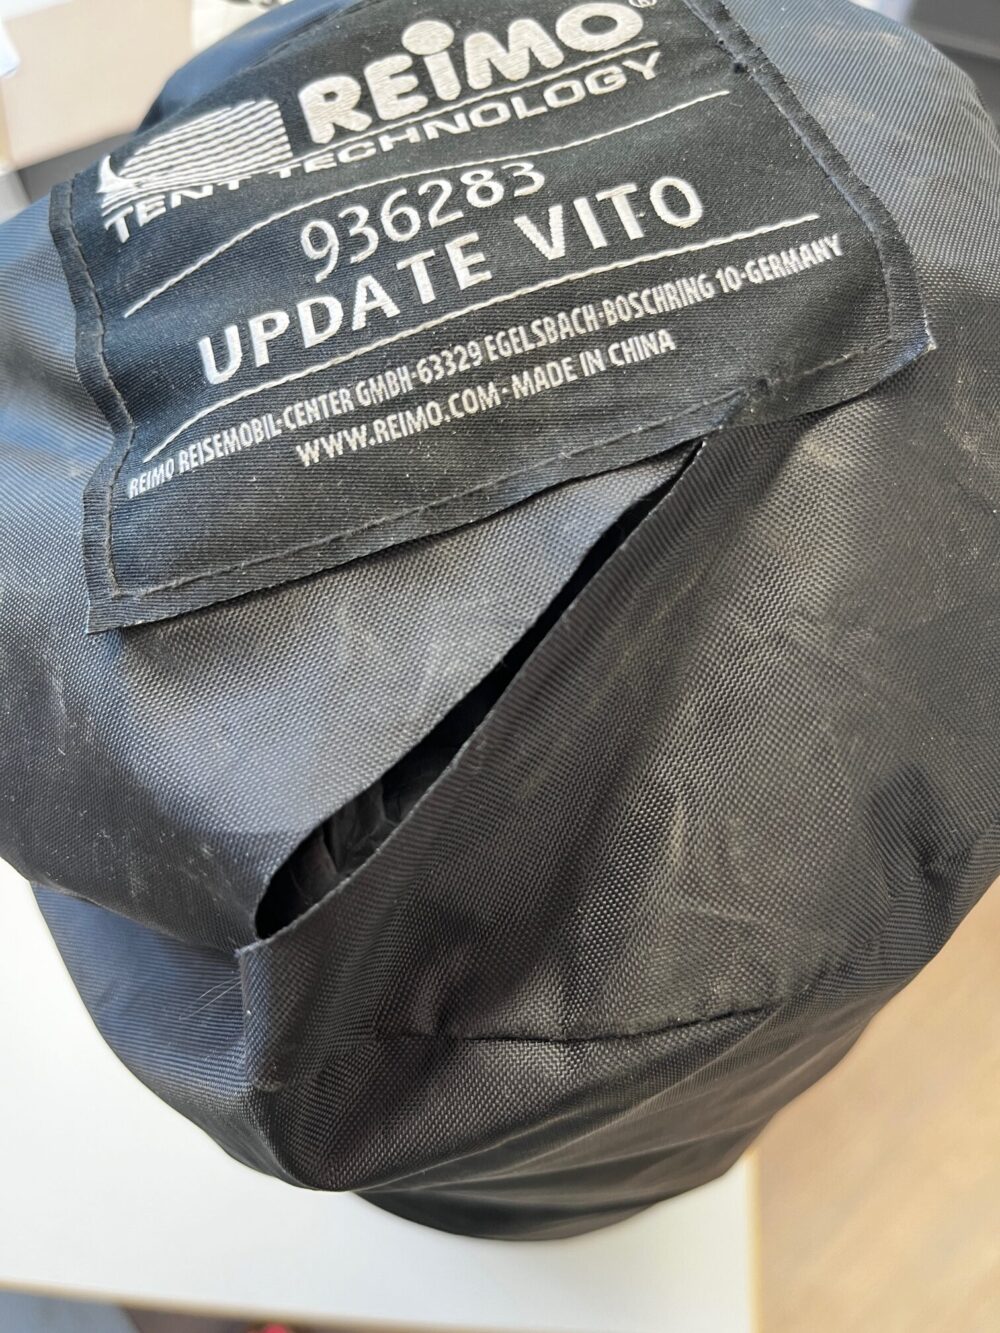 Reimo Update Mercedes Vito Heckzelt 936283